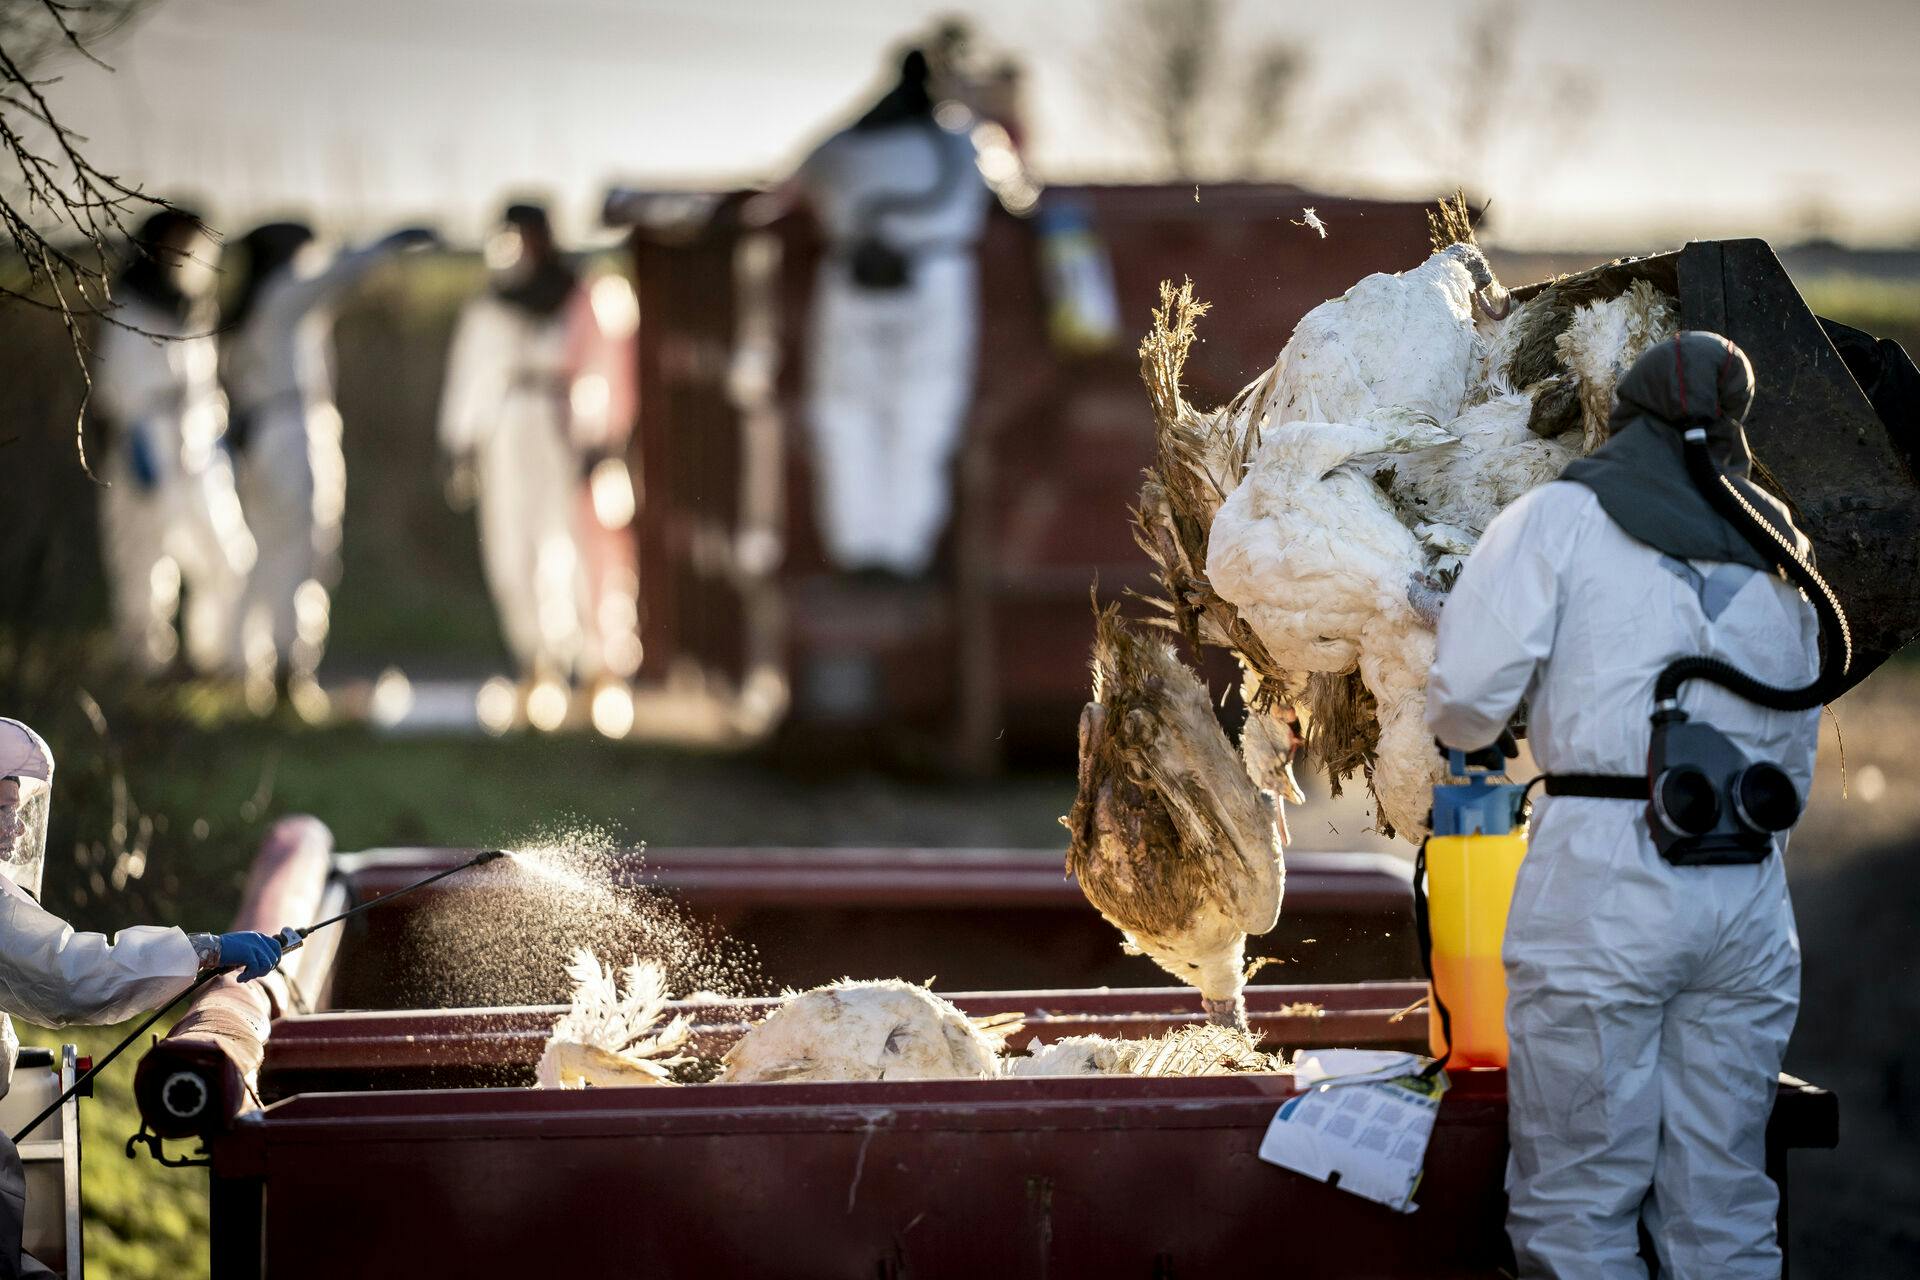 Fødevarestyrelsen begynder at aflive 27.000 kalkuner søndag, efter fund af fugleinfluenza.